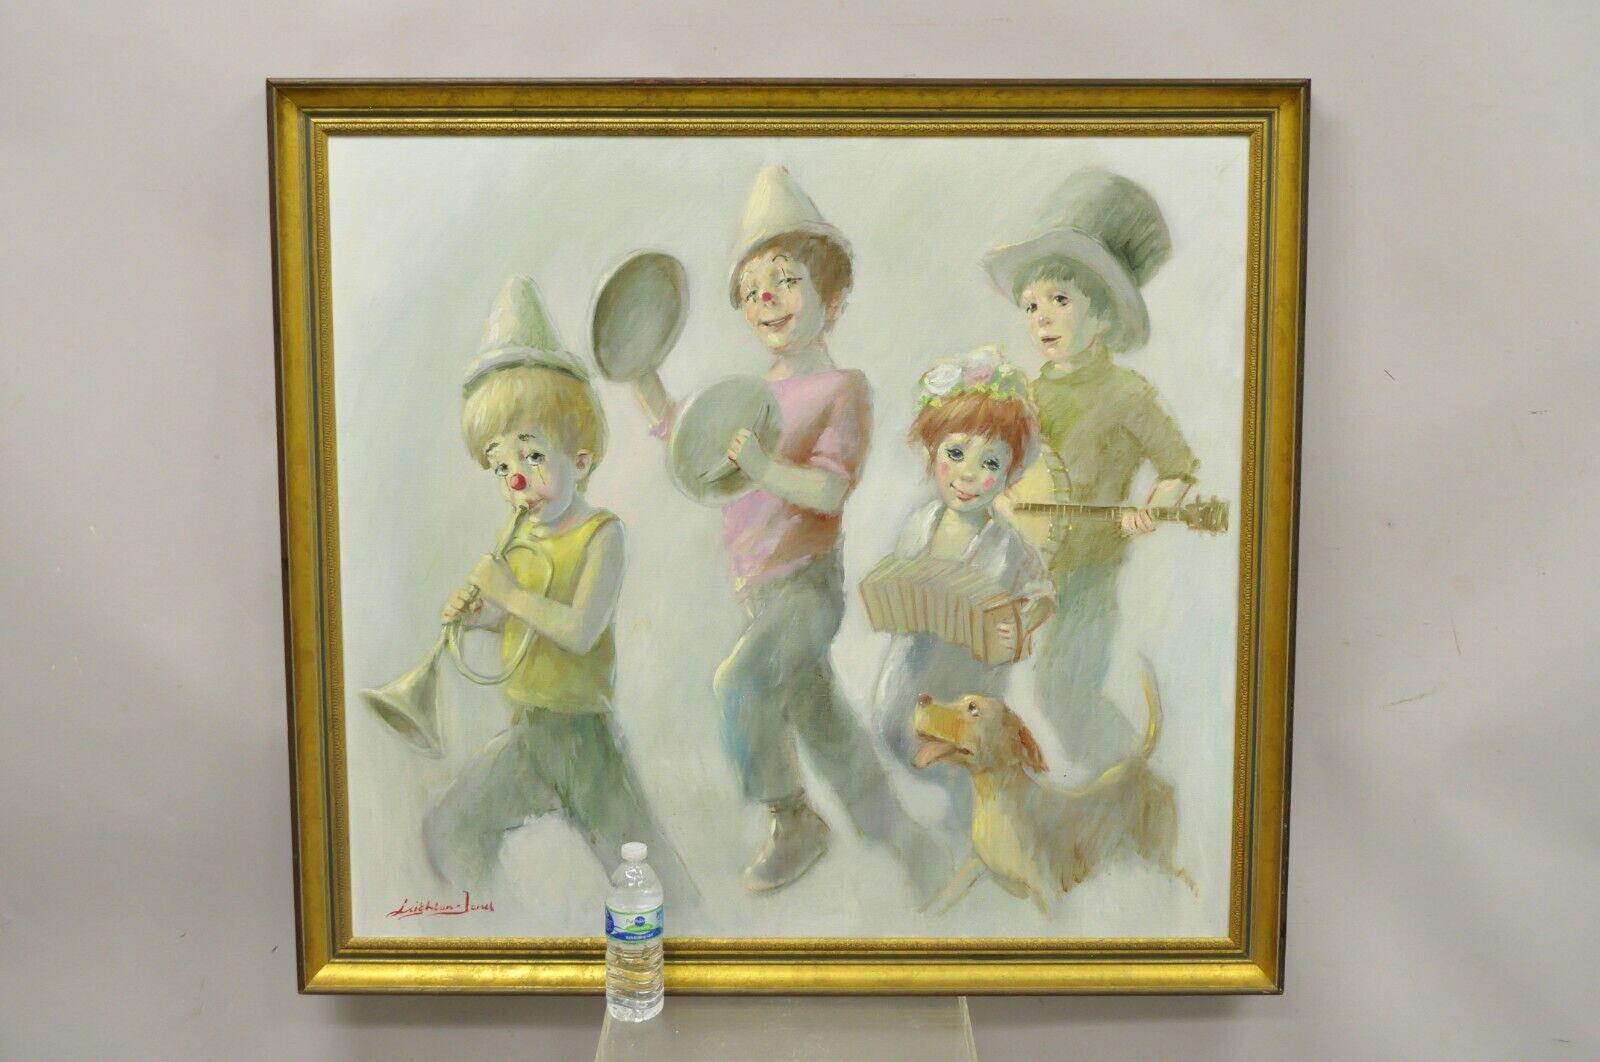 Barry Leighton Jones Grande peinture à l'huile sur toile Enfants, parade de clowns et chien, 